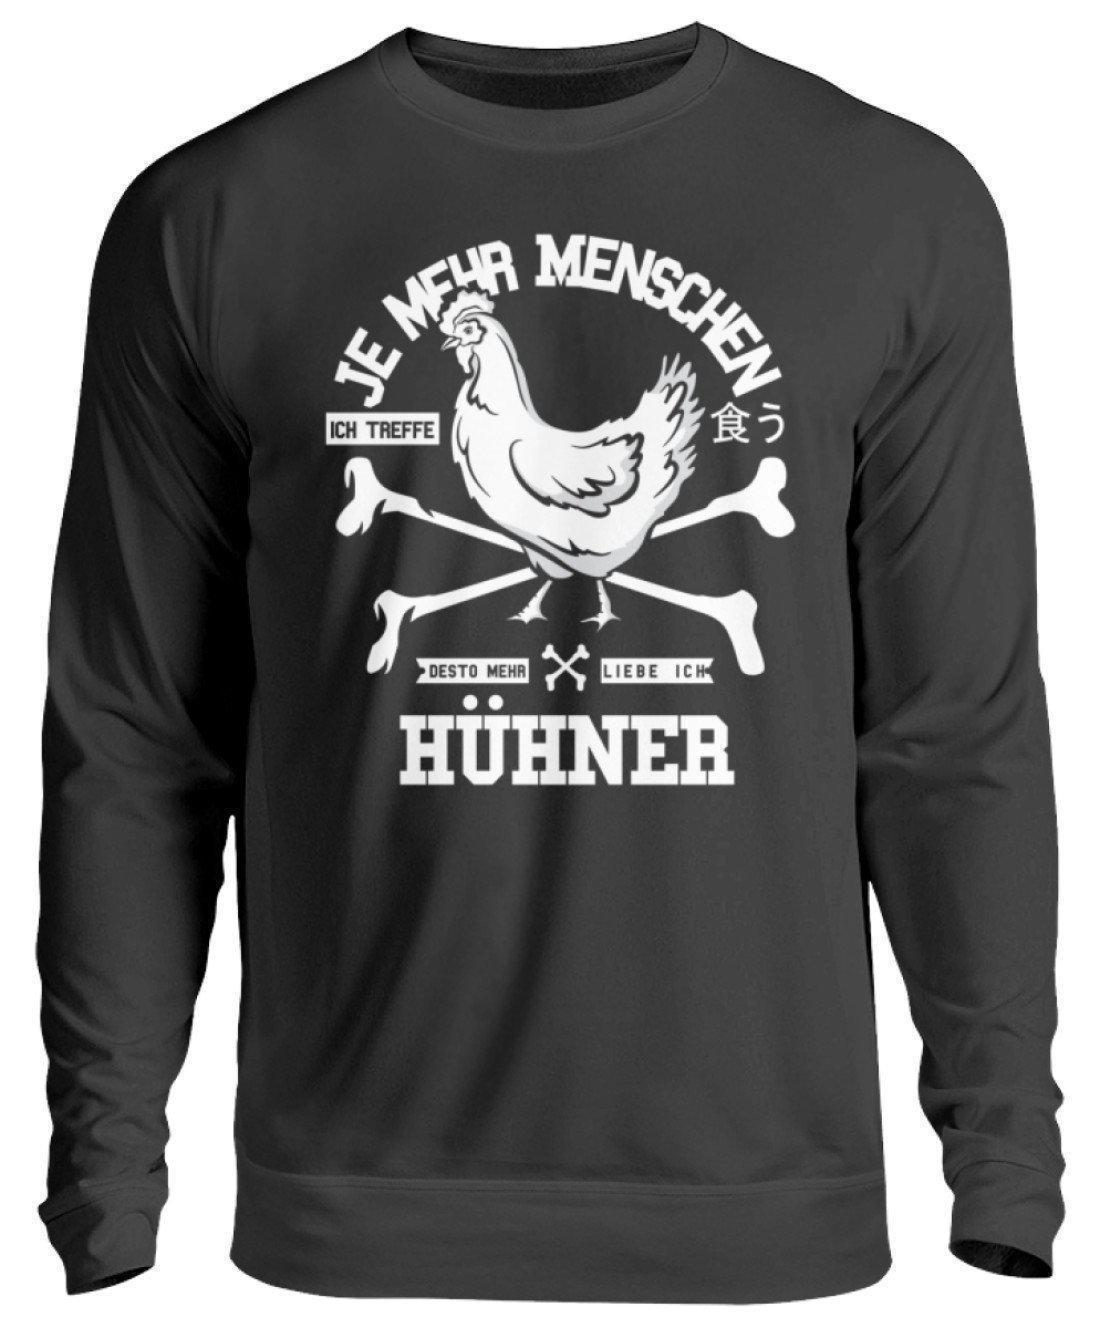 Desto mehr liebe ich Hühner · Unisex Sweatshirt Pullover-Unisex Sweatshirt-Jet Black-S-Agrarstarz